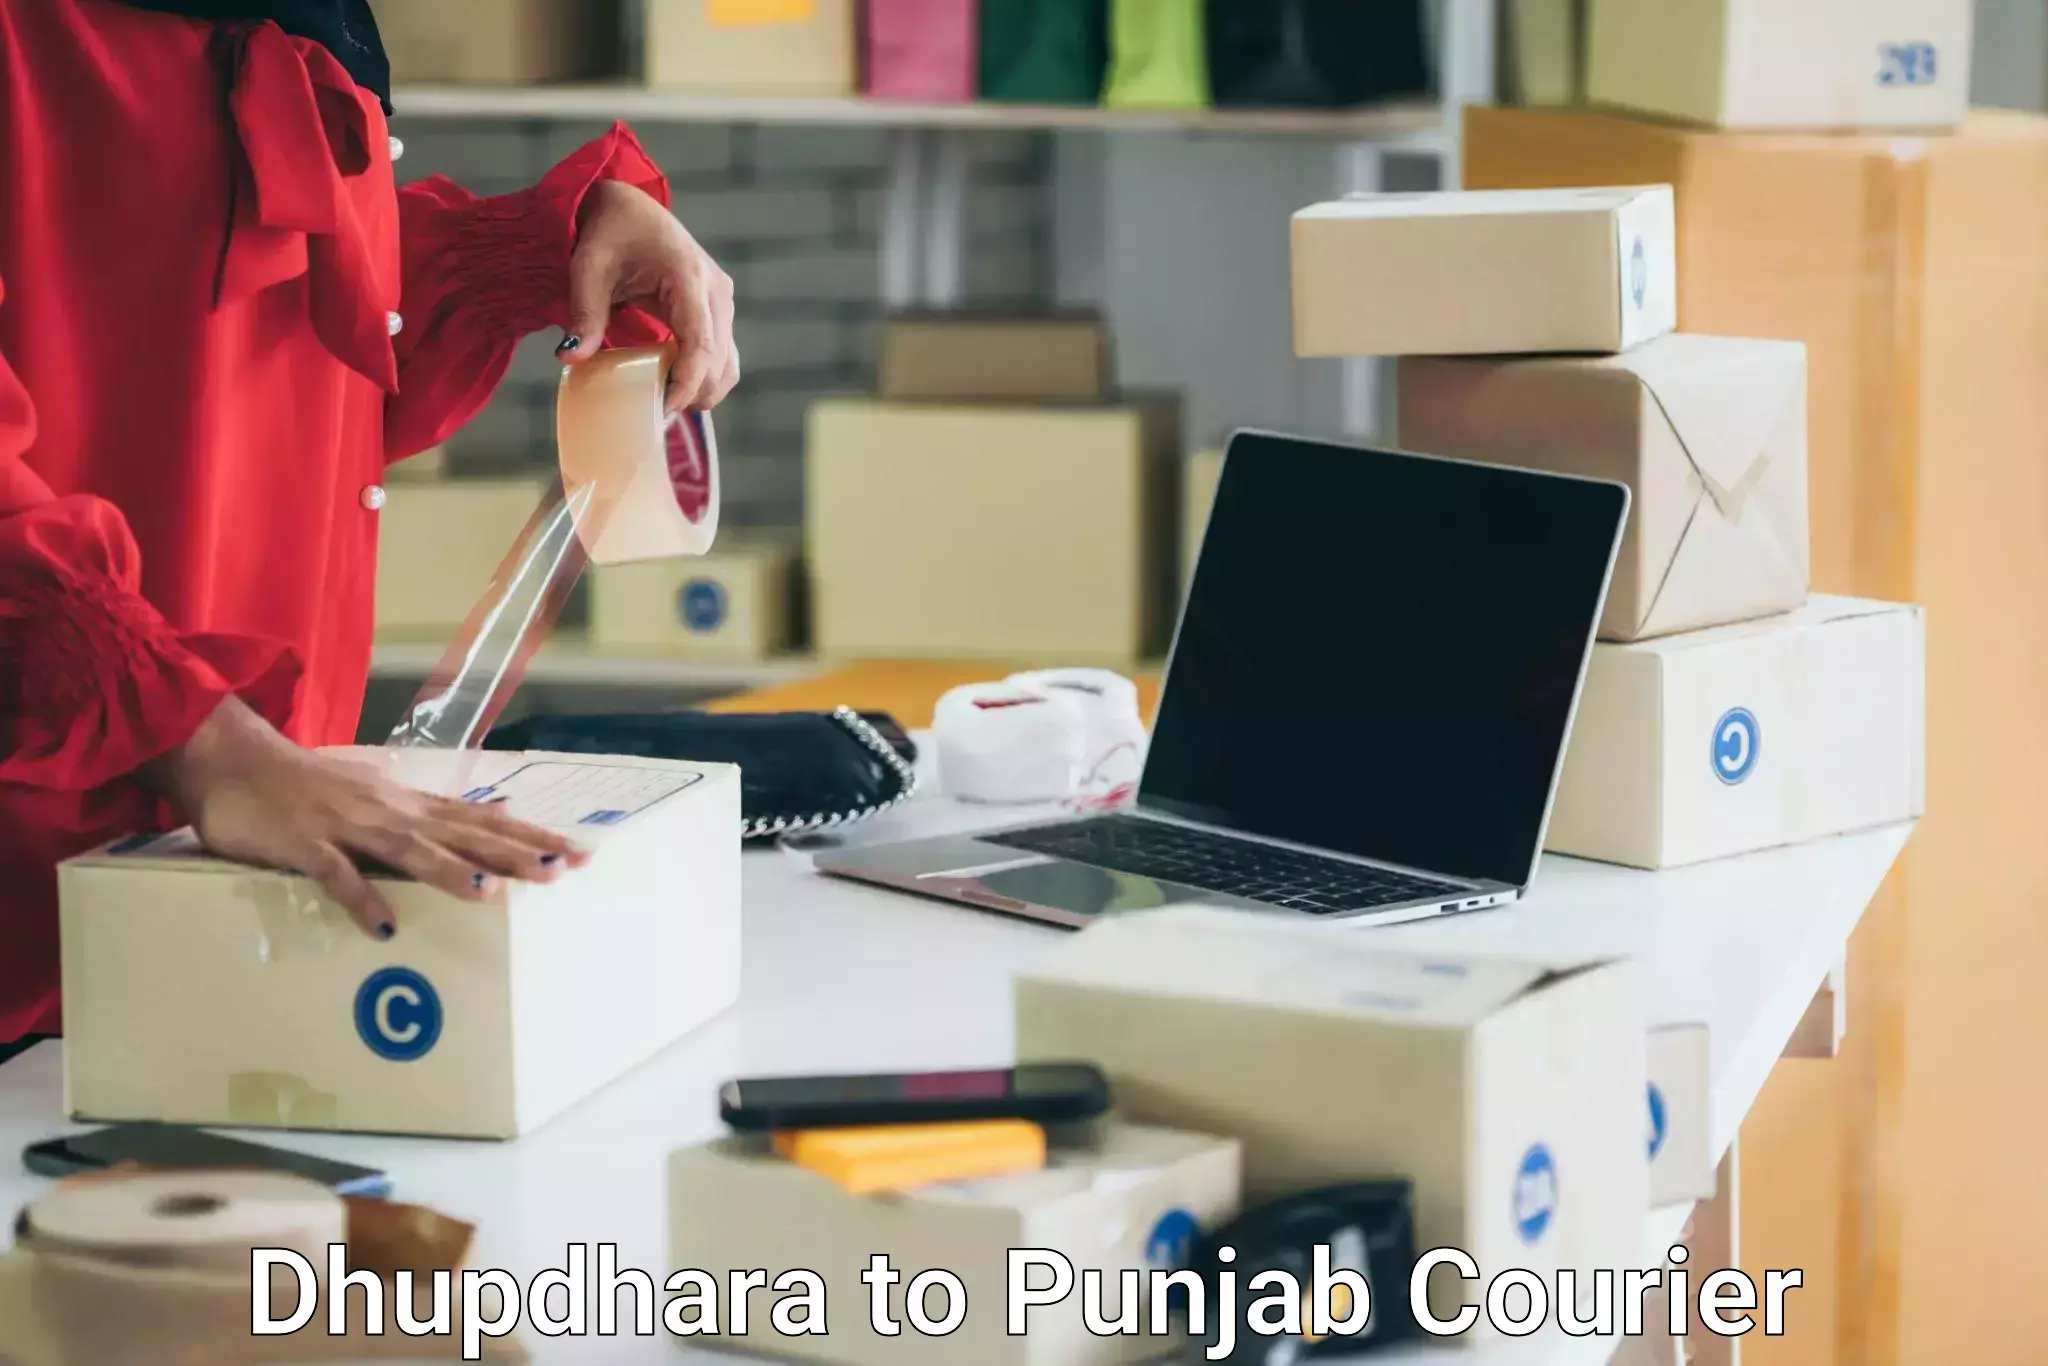 Door-to-door relocation services Dhupdhara to Punjab